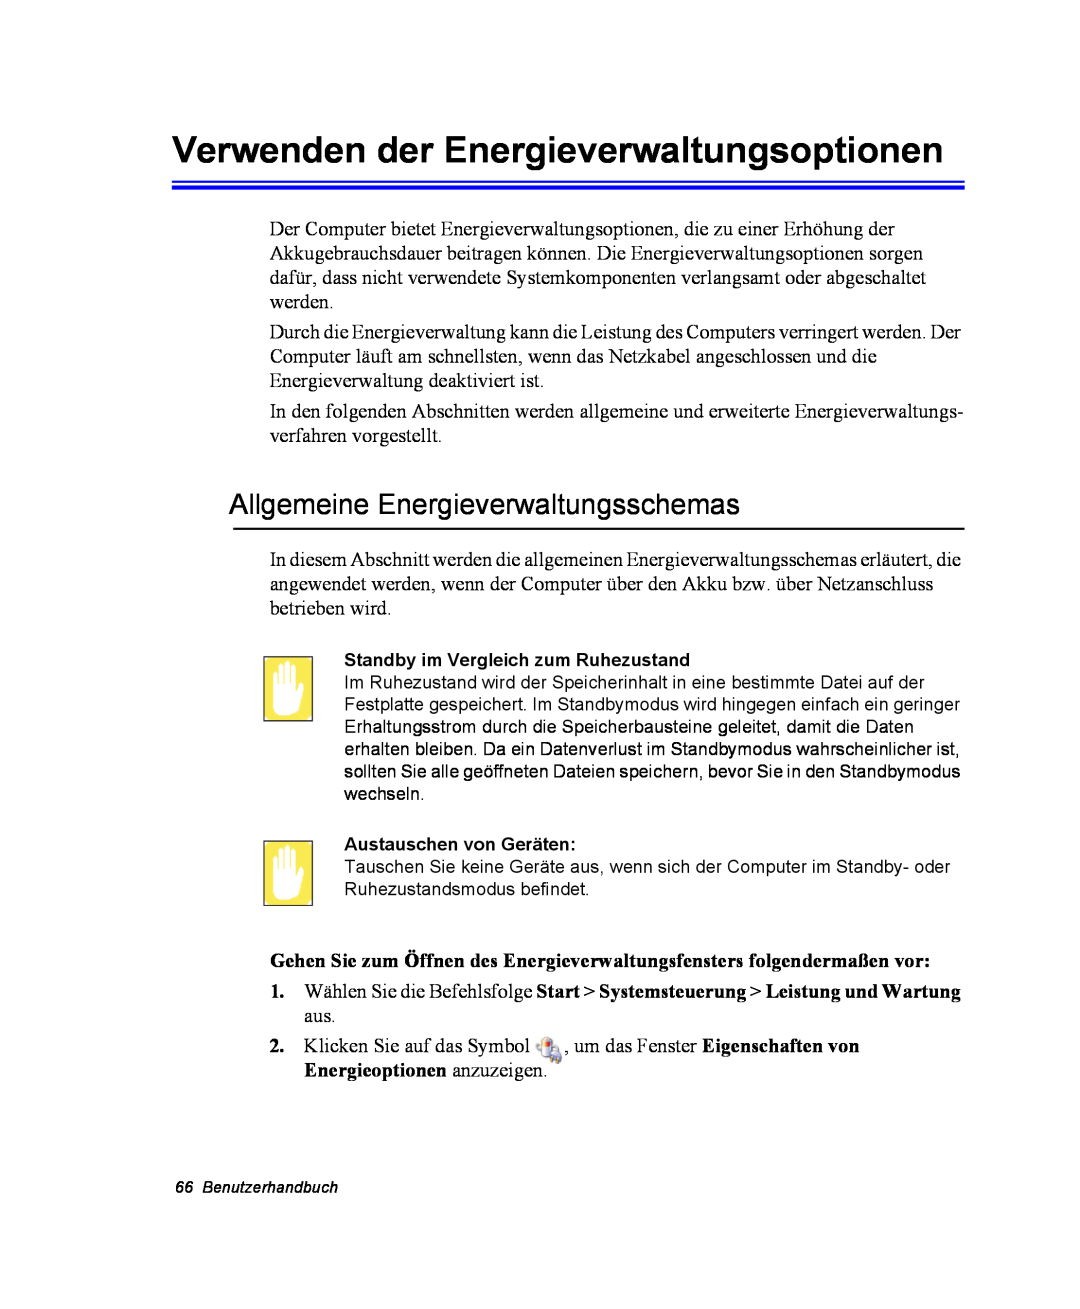 Samsung NX10PRTV04/SUK, NX10PRDV01/SEG manual Verwenden der Energieverwaltungsoptionen, Allgemeine Energieverwaltungsschemas 